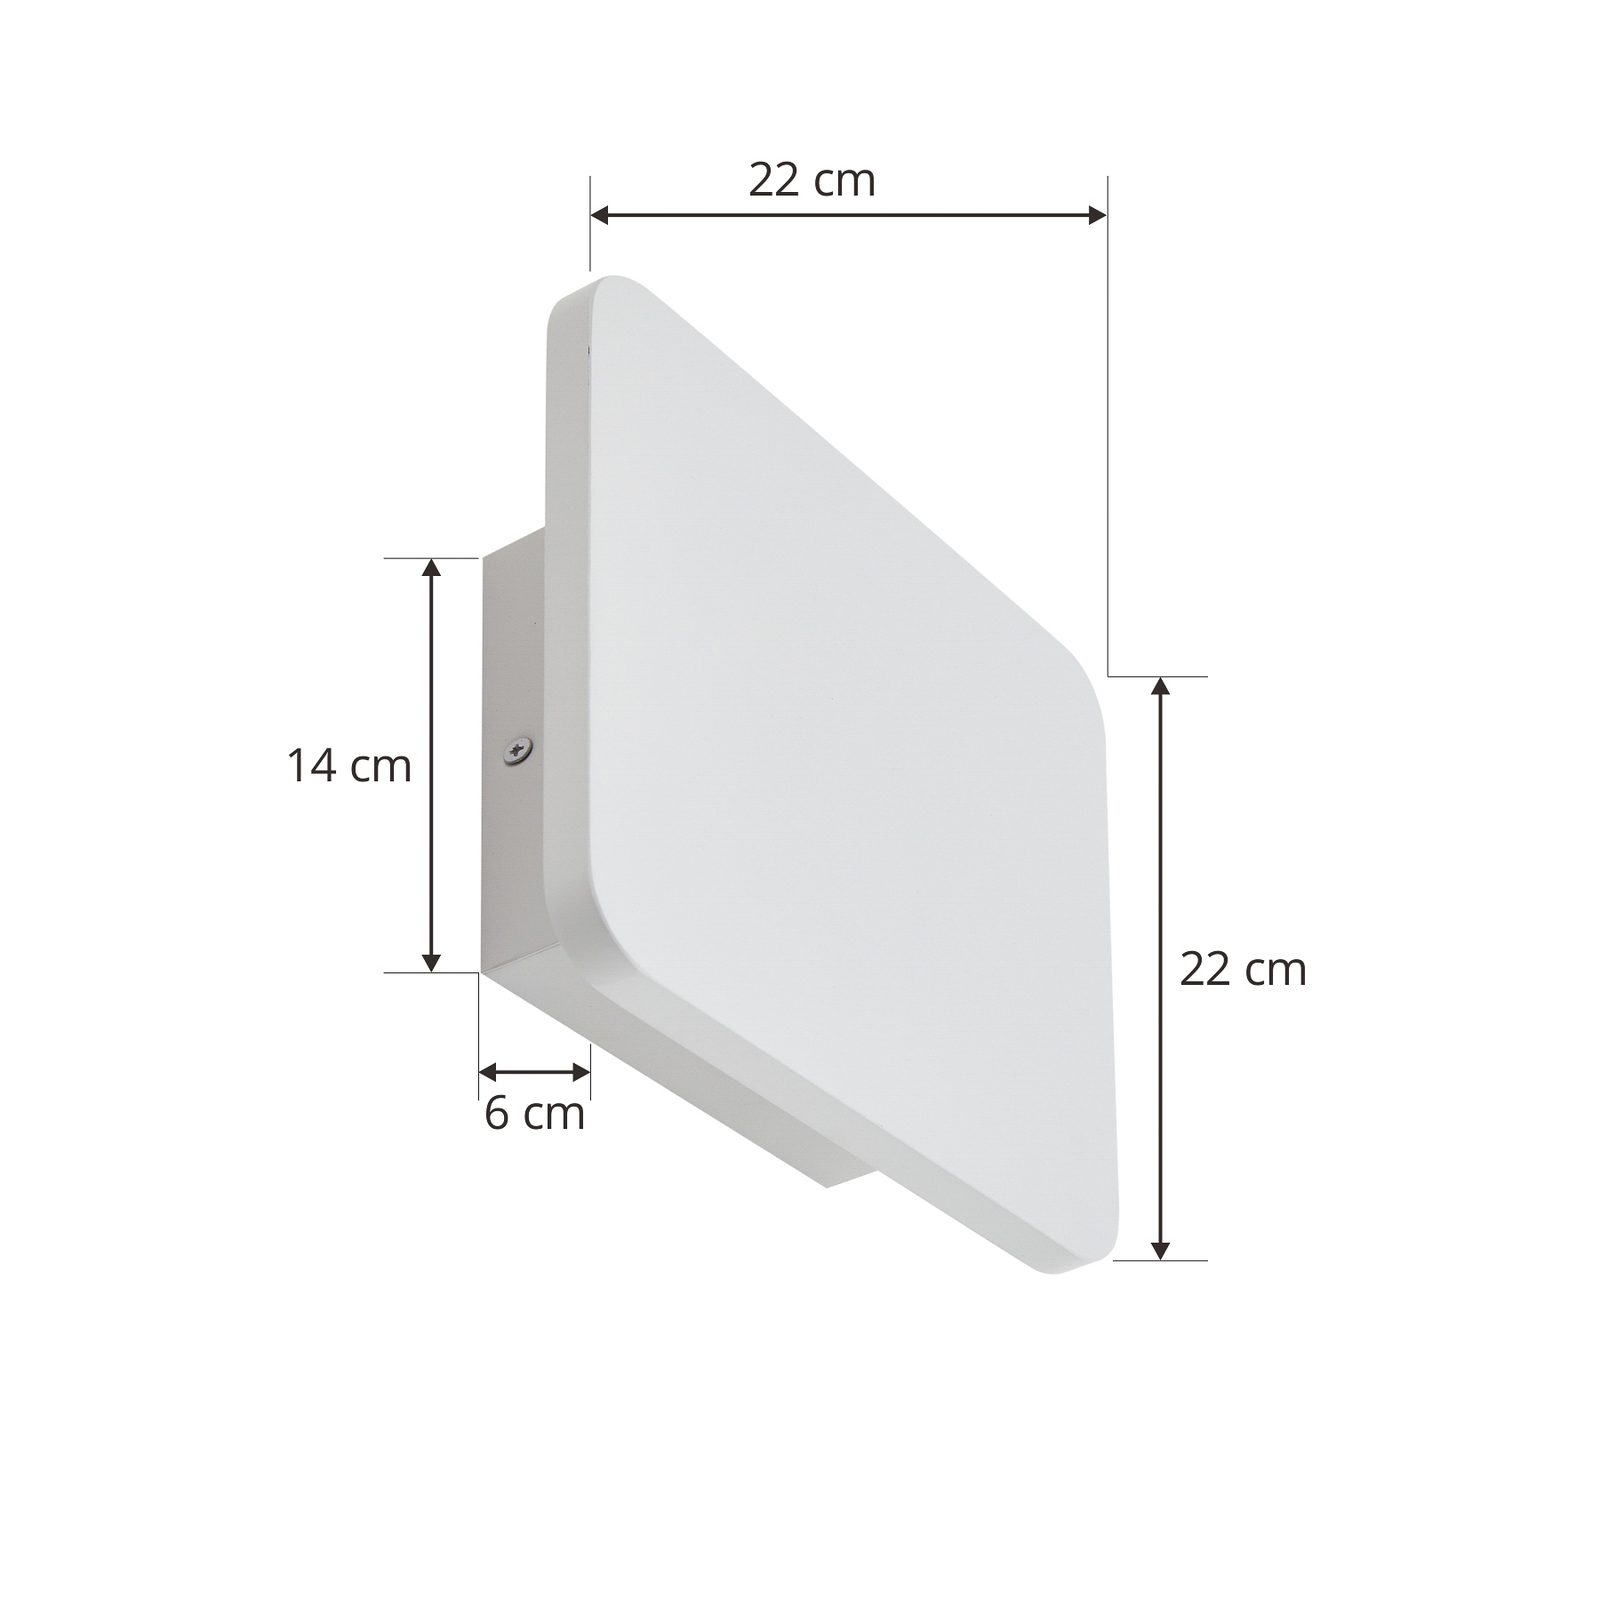 Nástenné svietidlo Lucande LED Elrik, biele, výška 22 cm, kov